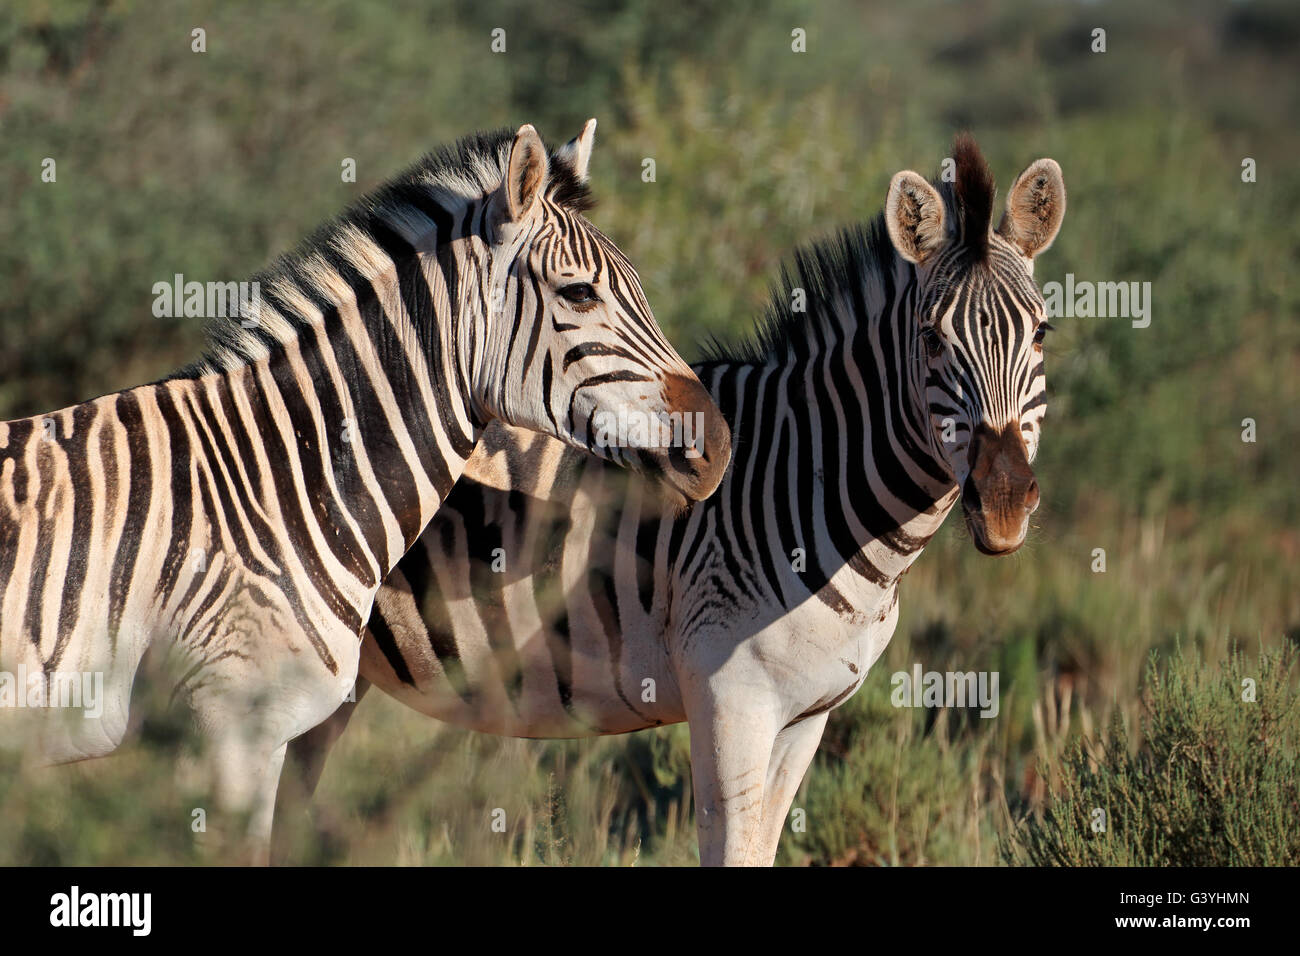 Portrait of two plains (Burchells) zebras (Equus burchelli), South Africa Stock Photo